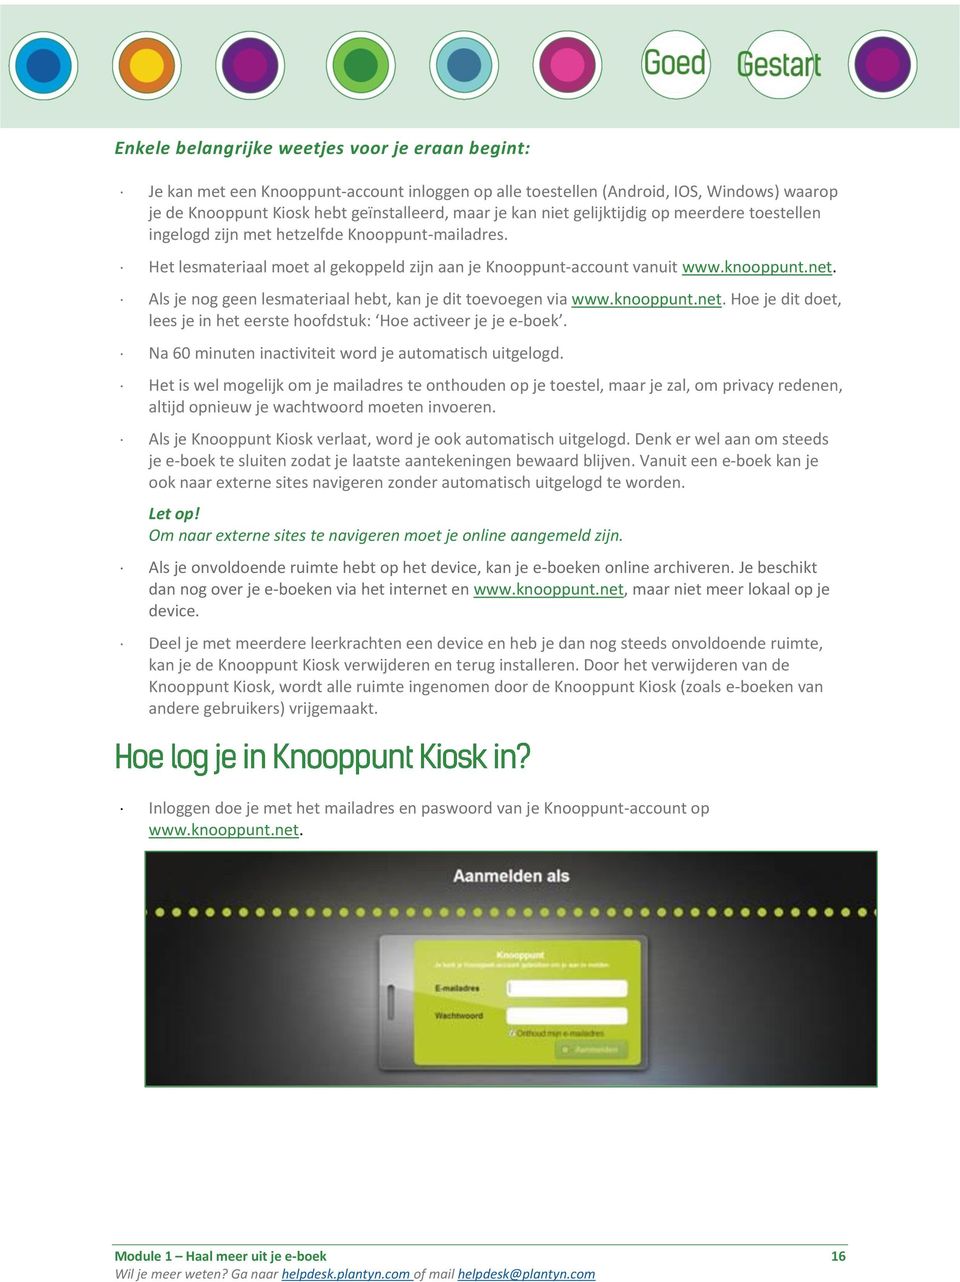 Als je nog geen lesmateriaal hebt, kan je dit toevoegen via www.knooppunt.net. Hoe je dit doet, lees je in het eerste hoofdstuk: Hoe activeer je je e-boek.